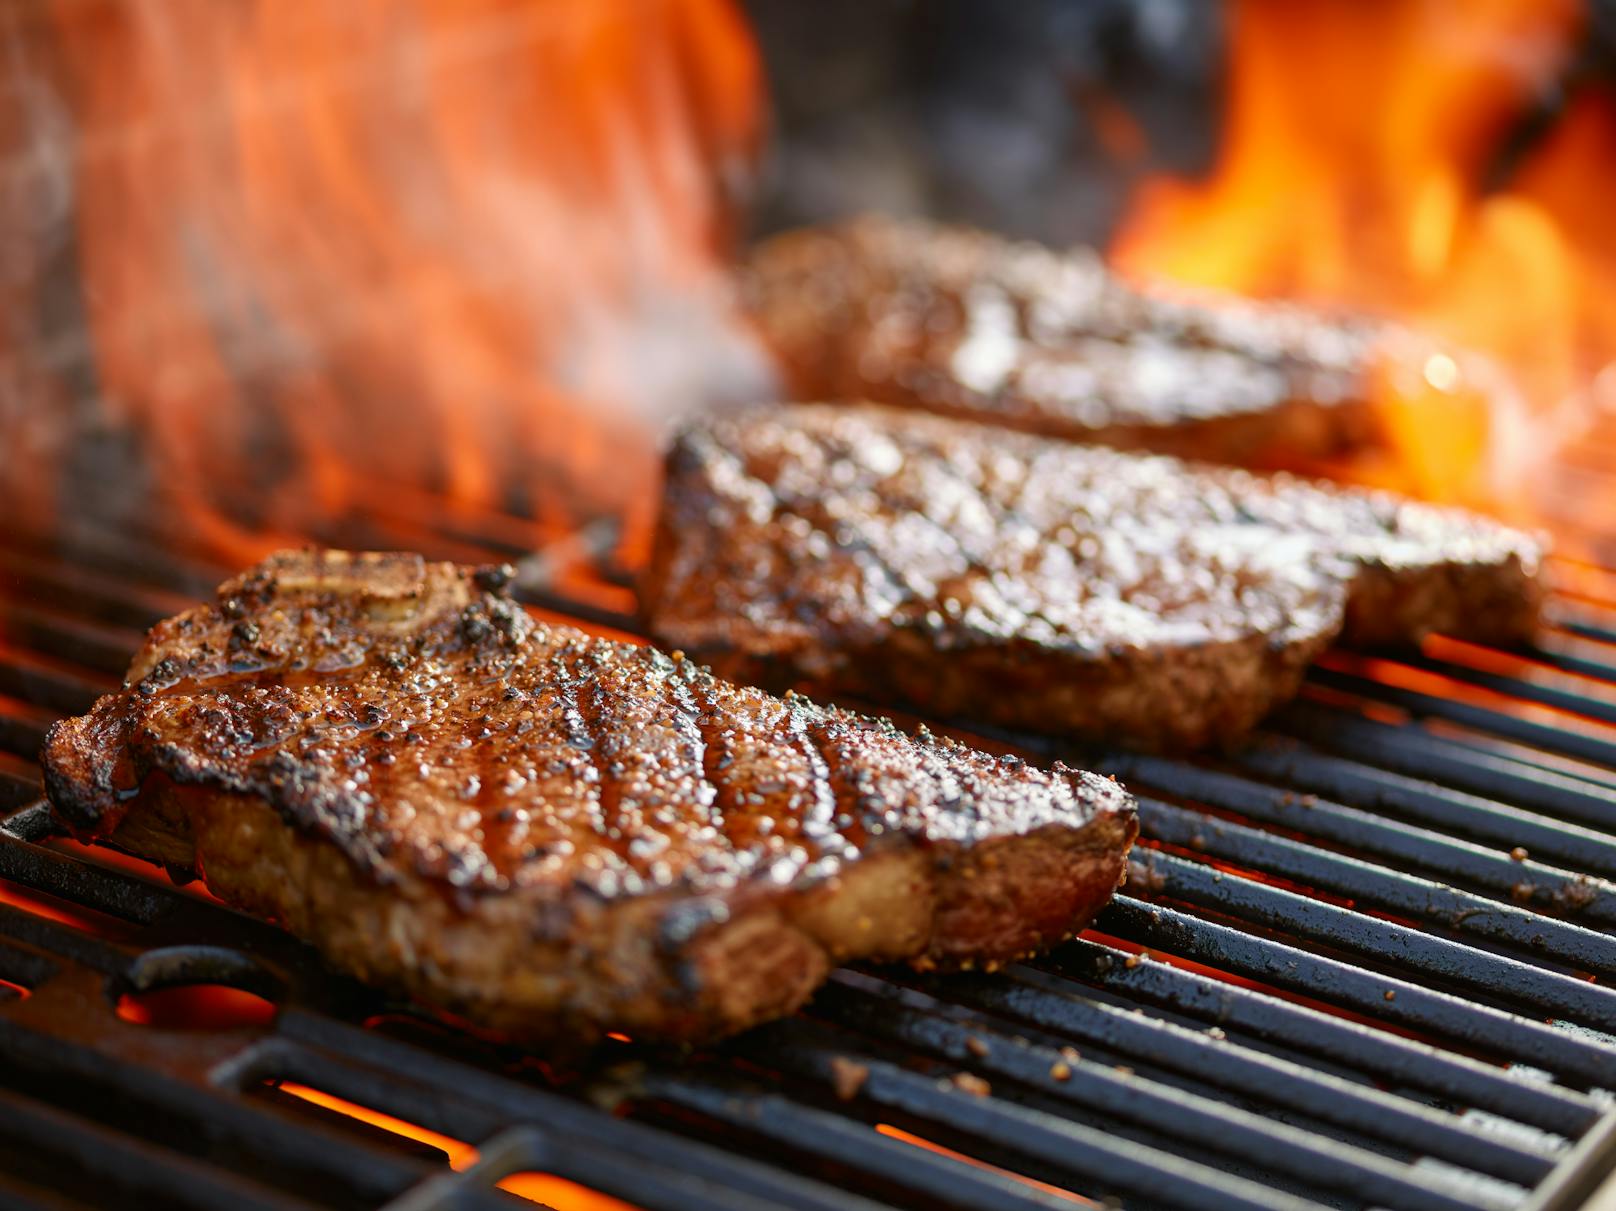 Damit das Steak vom Grill perfekt wird, sollten vier Fehler vermieden werden.